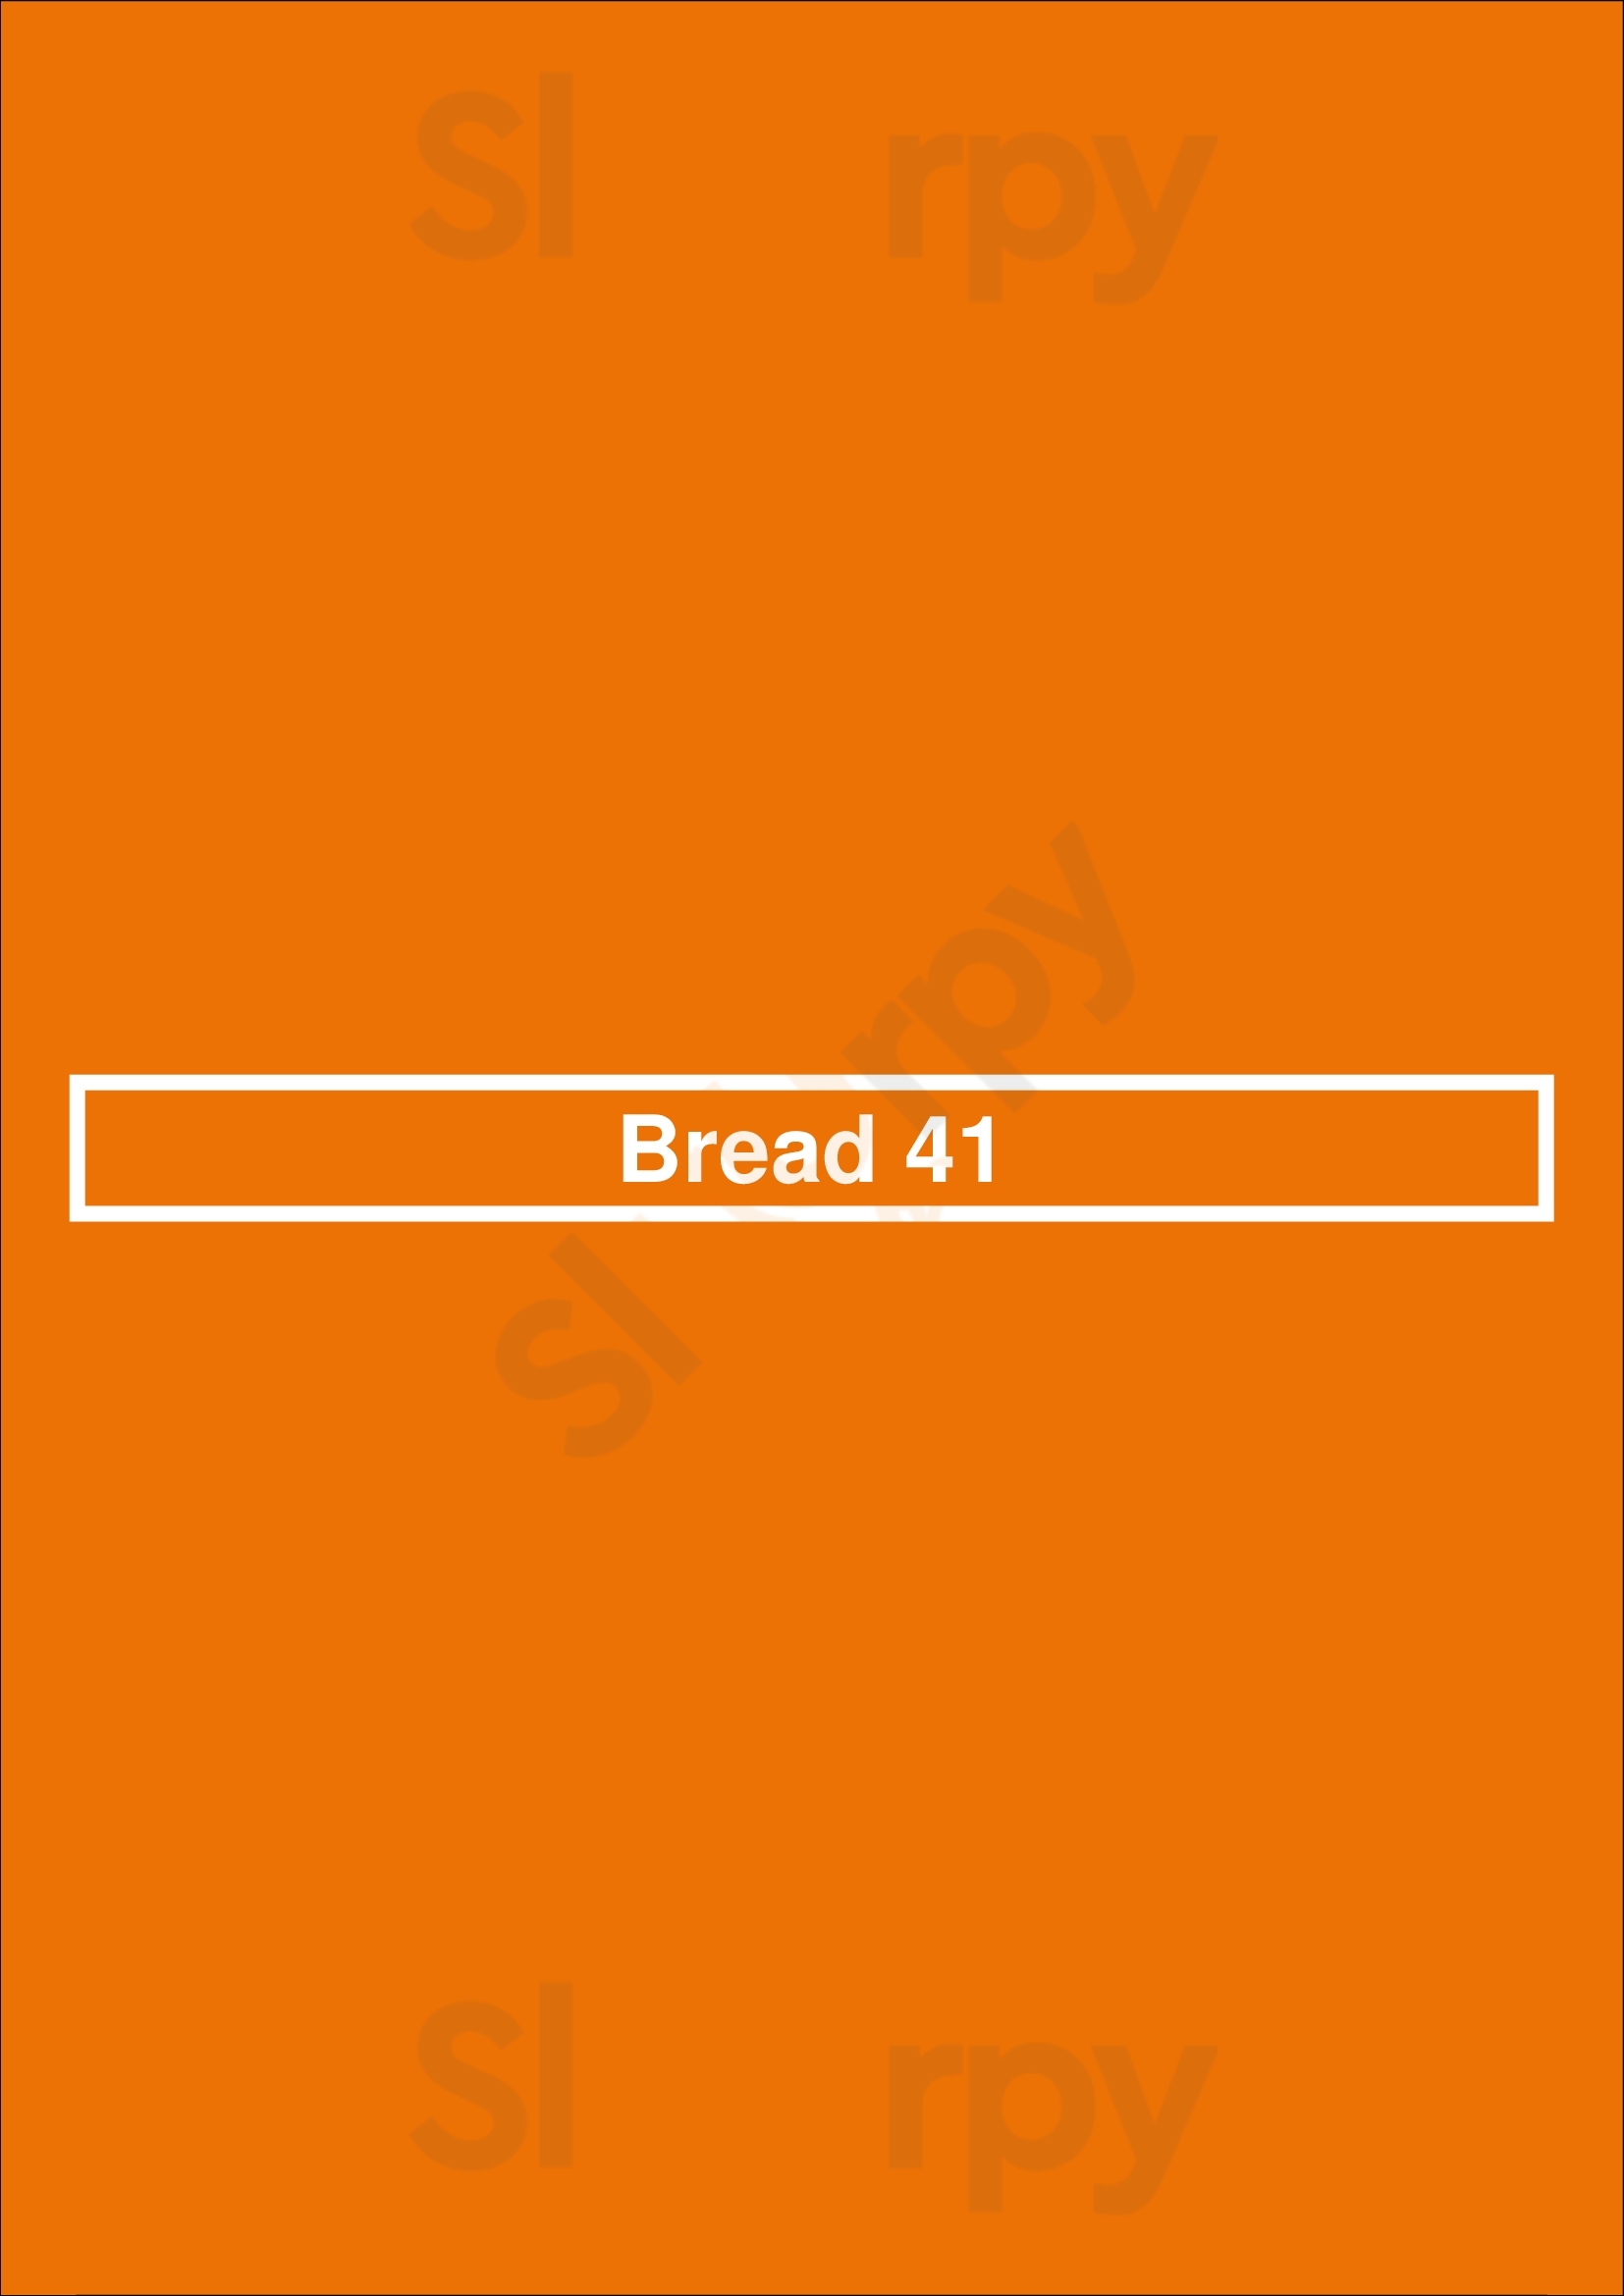 Bread 41 Dublin Menu - 1